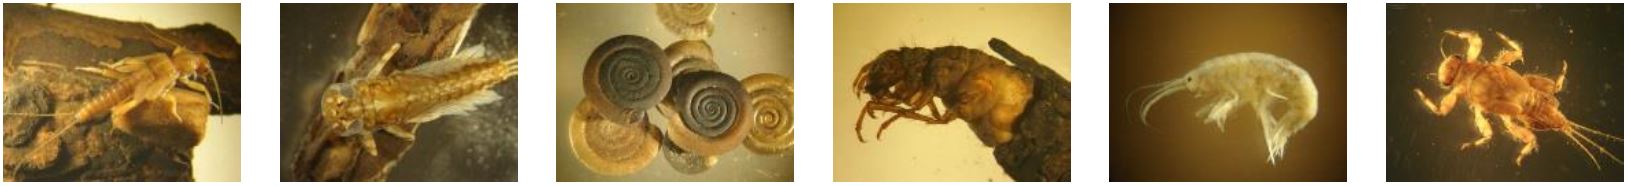 Die 6 Fotos zeigen verschiedene wirbellose tierische Organismen, u. a. eine Köcherfliegenlarve